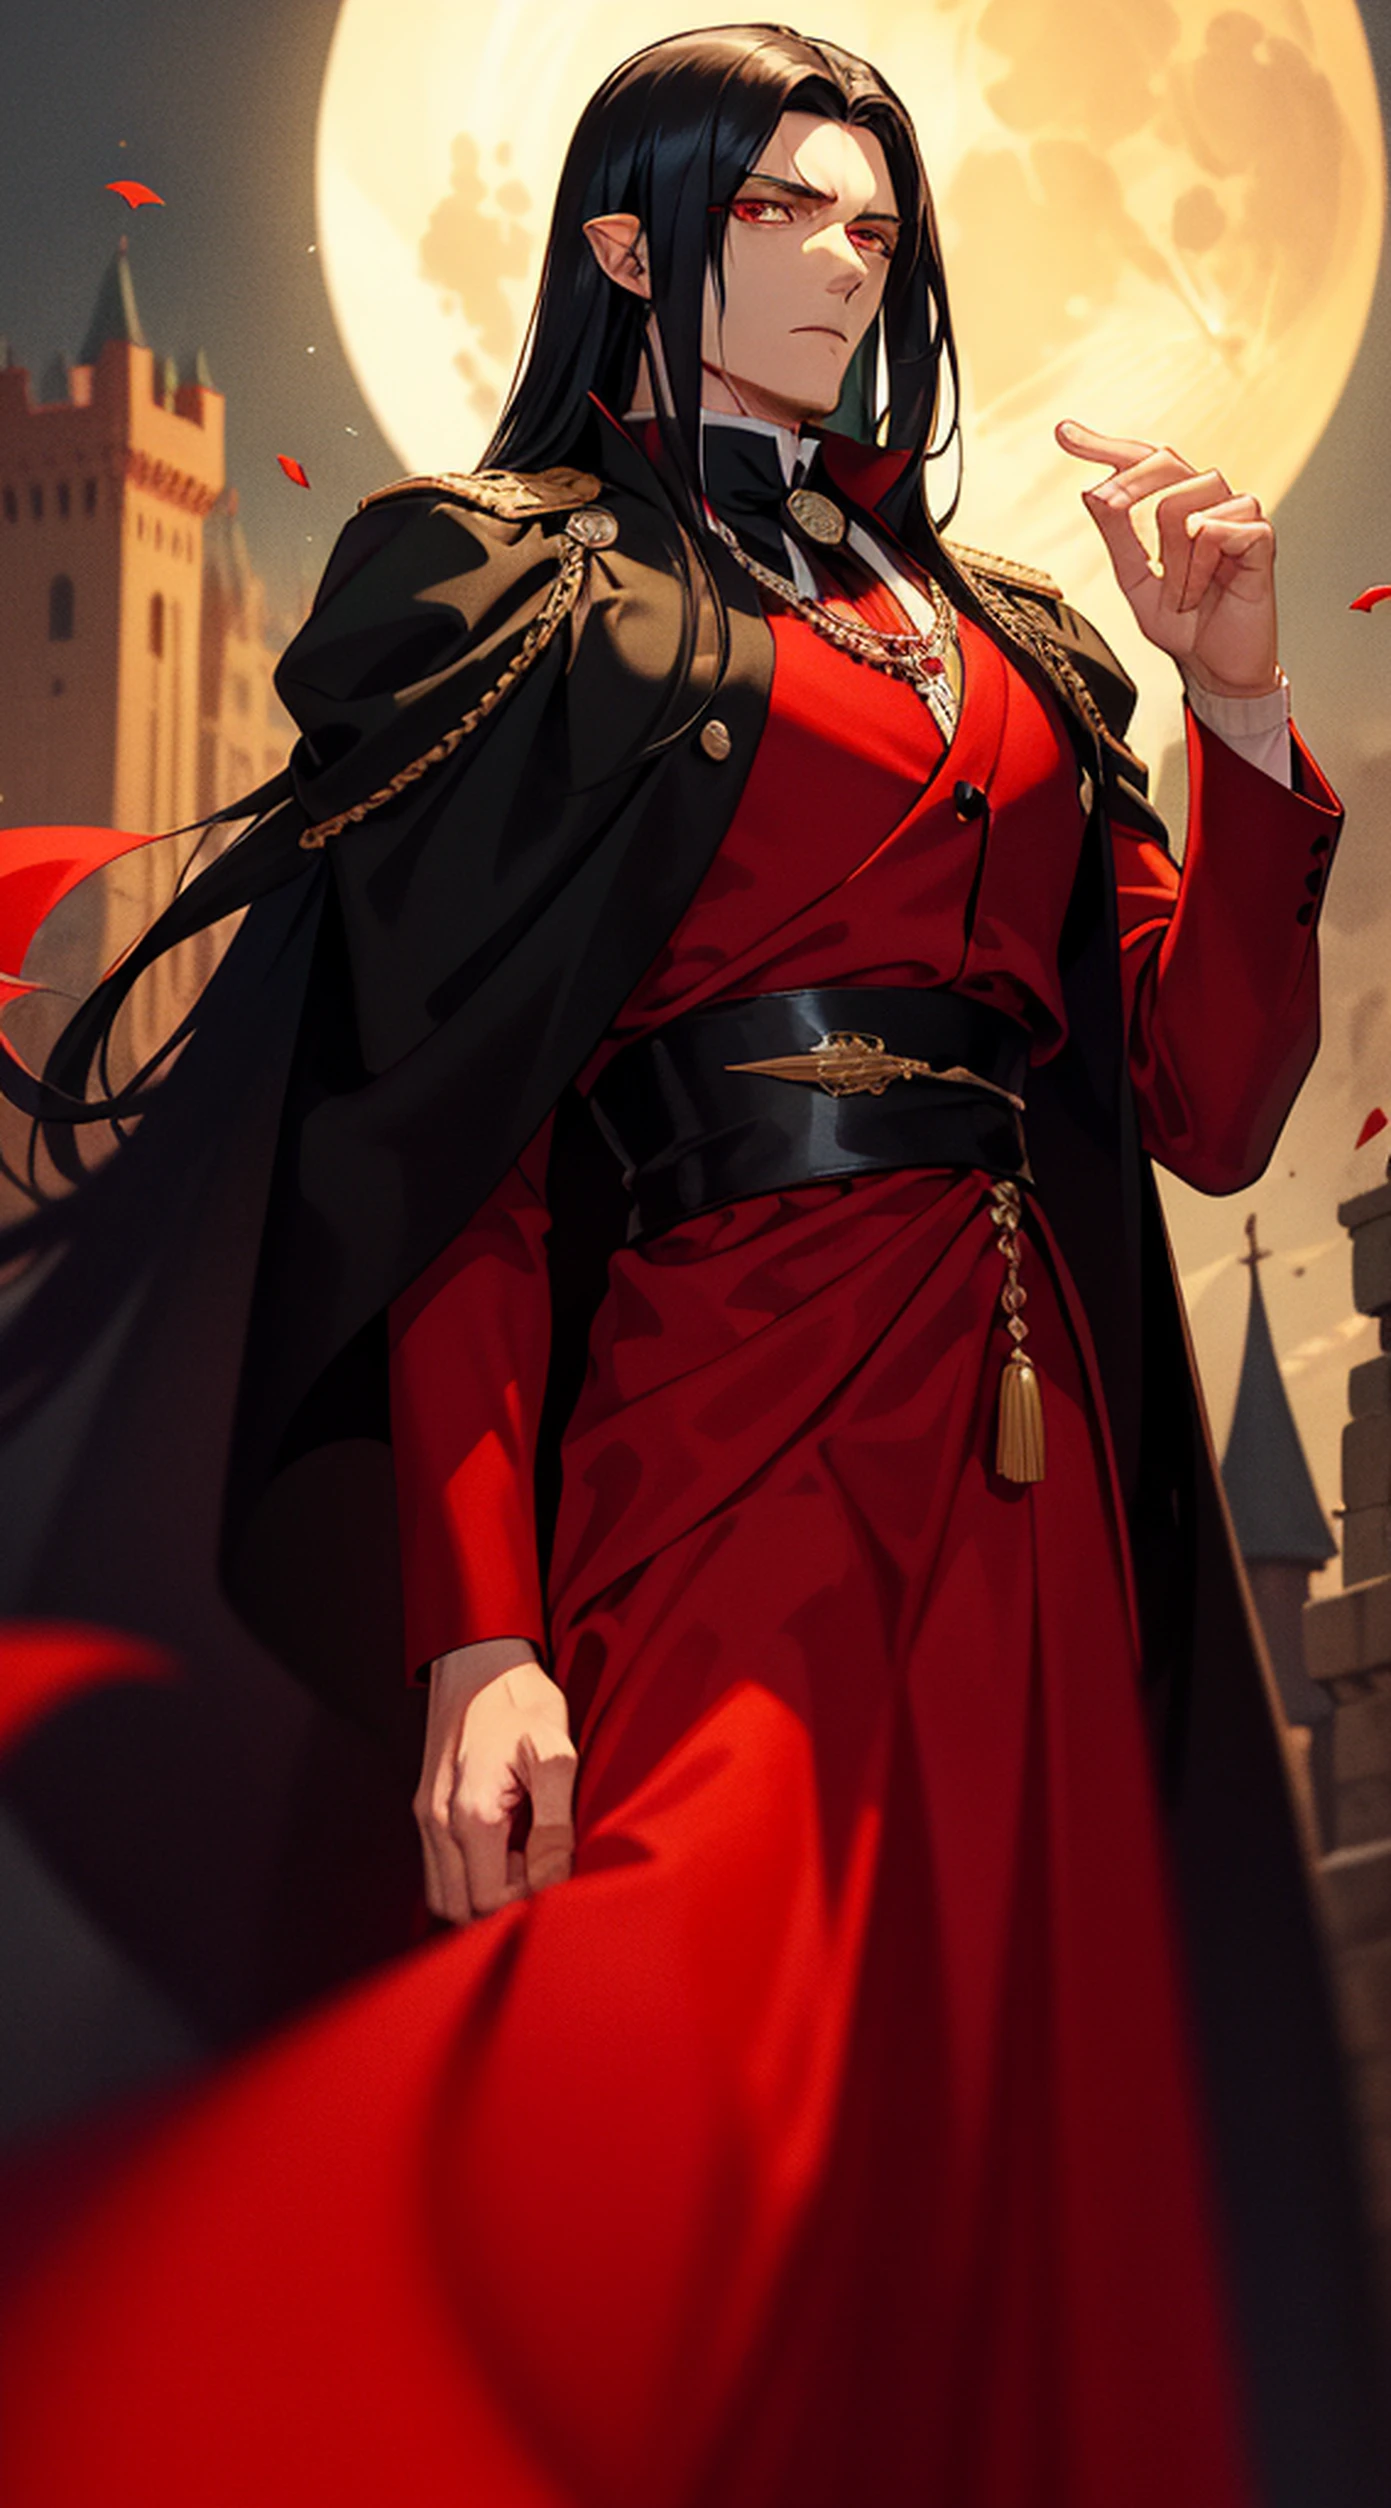 un hombre guapo, un rey vampiro con largo cabello negro y ojos rojos, Viste una túnica marrón y un traje negro con rojo.. (Senarius una noche de luna sangrienta en un castillo real)